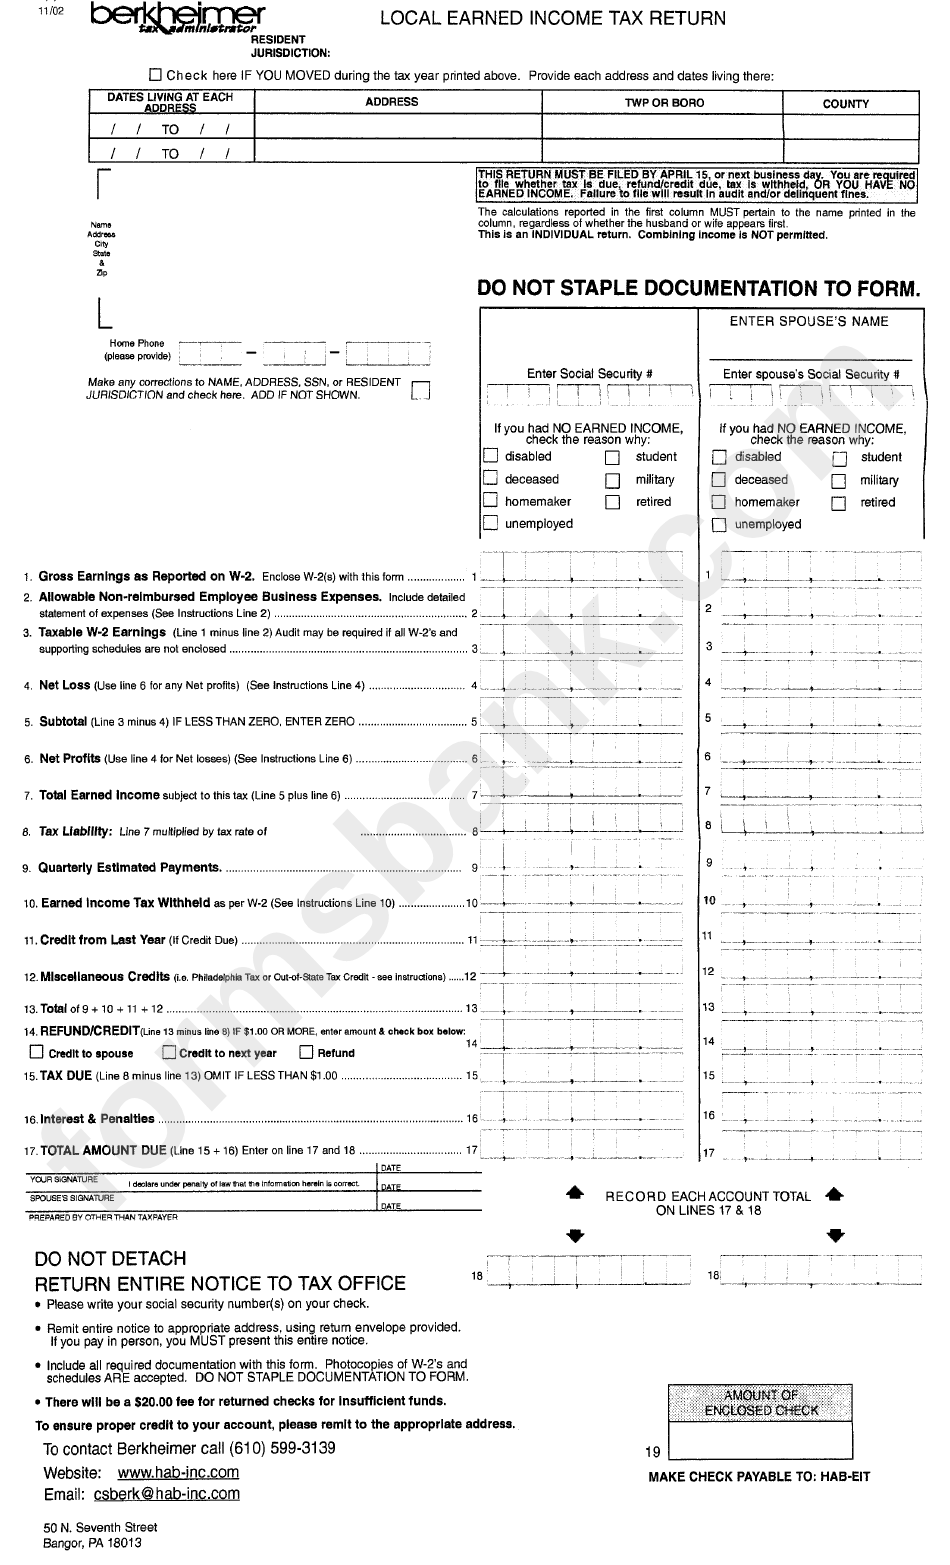 Local Earned Tax Return Form Berkheimer Tax Administrator